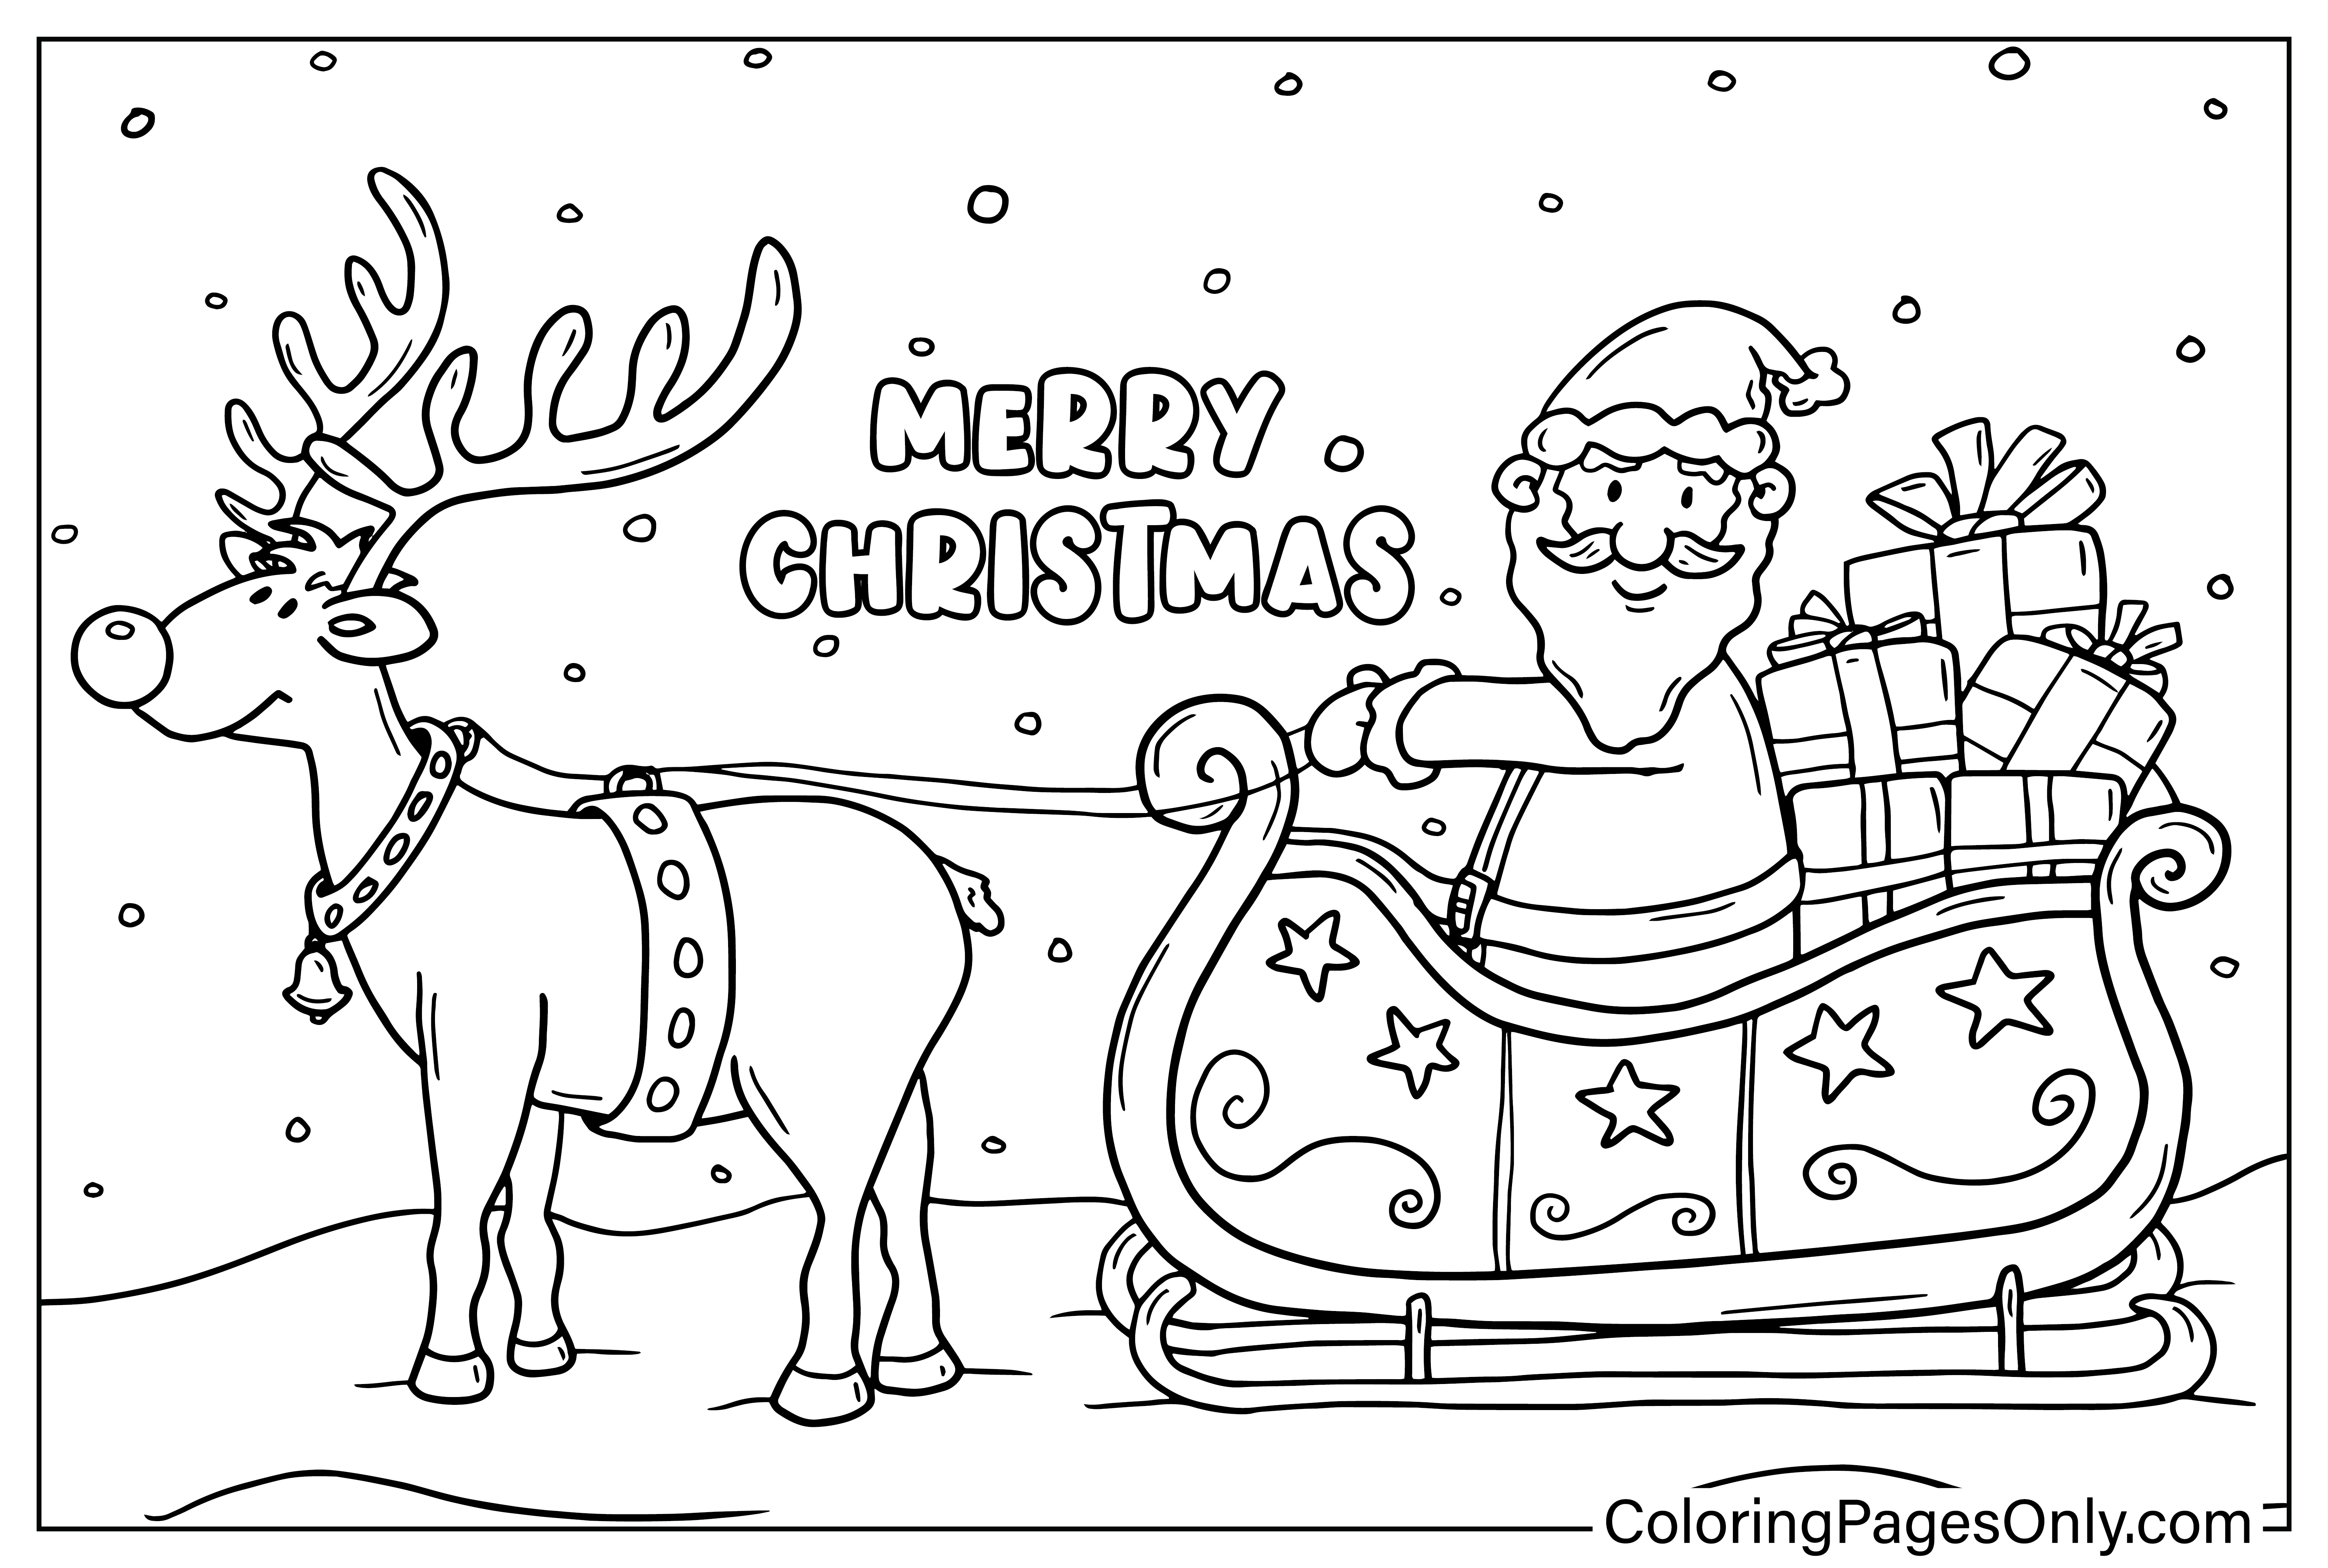 Página para colorear de renos y Papá Noel de Papá Noel